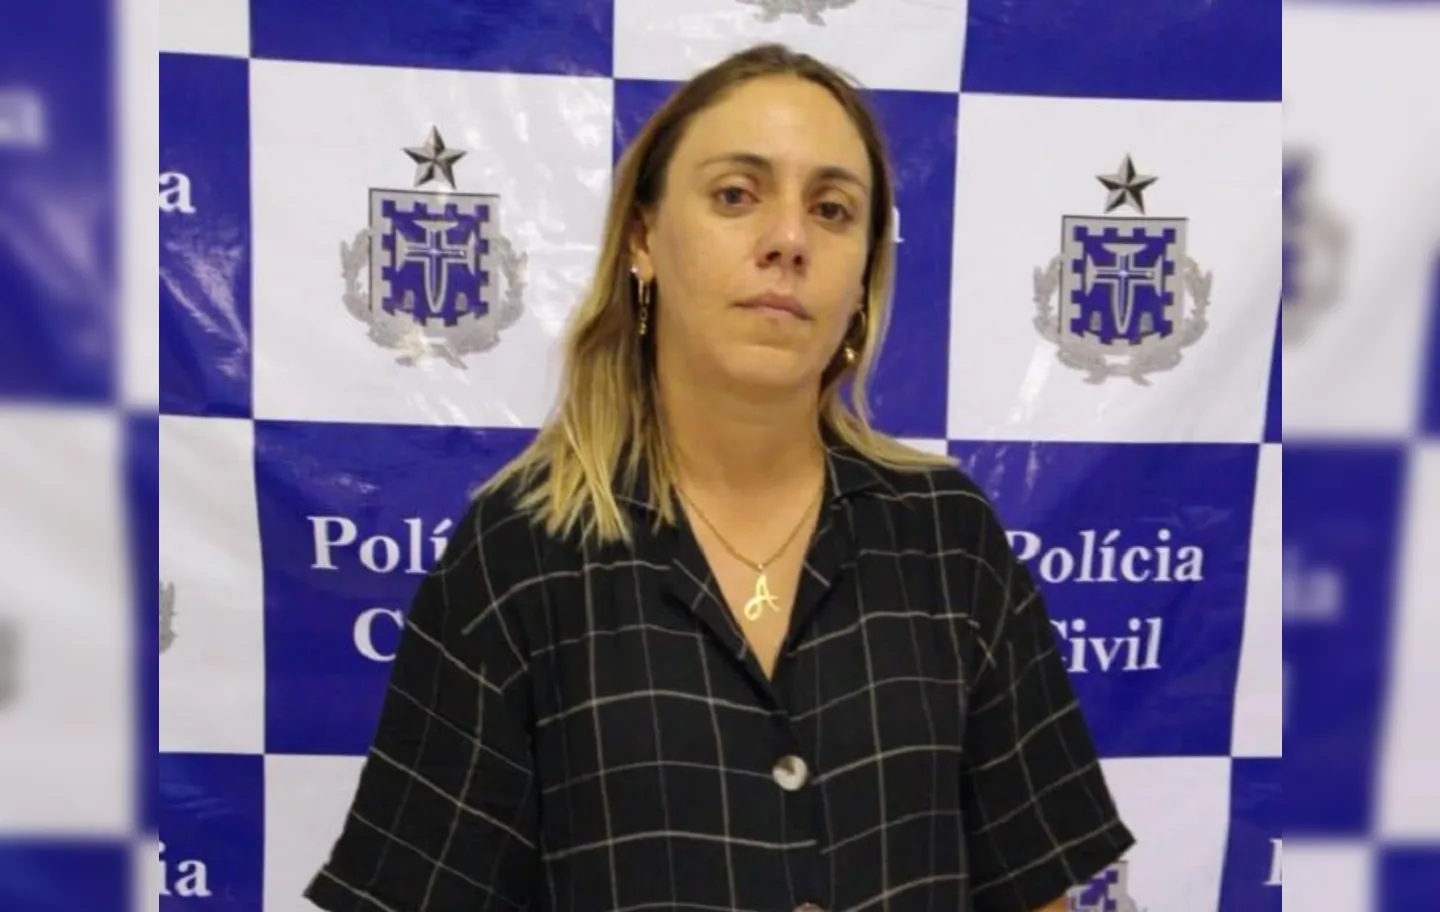 Marcos Aurélio de Oliveira Porto, marido de Adriana, foi encontrado carbonizado no porta malas de um carro